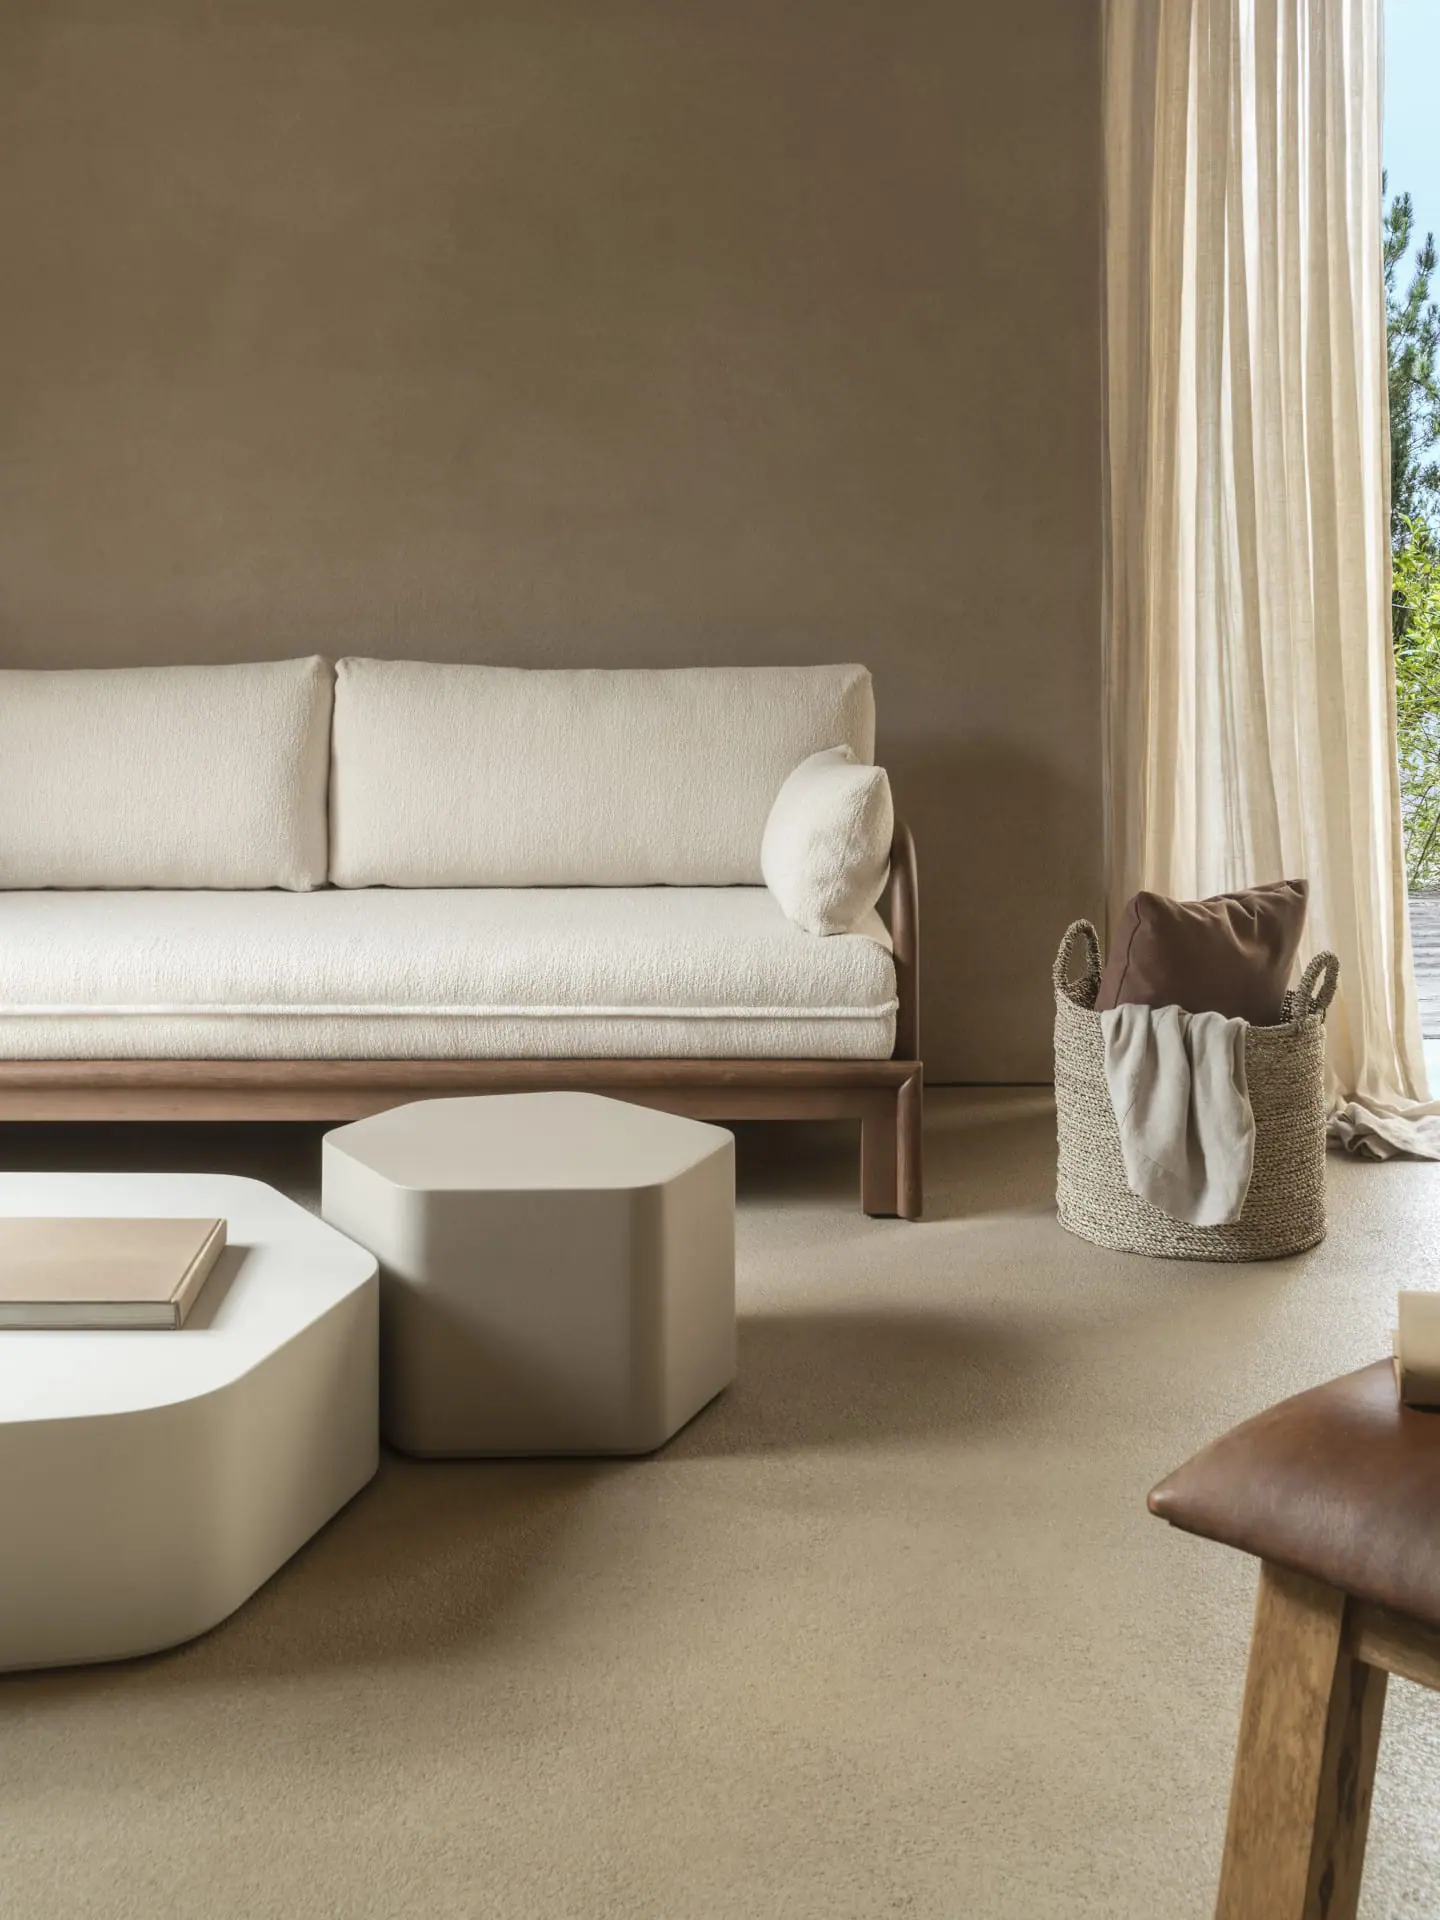 505-sofa-studio-expormim-handmade-furniture-indoor-01